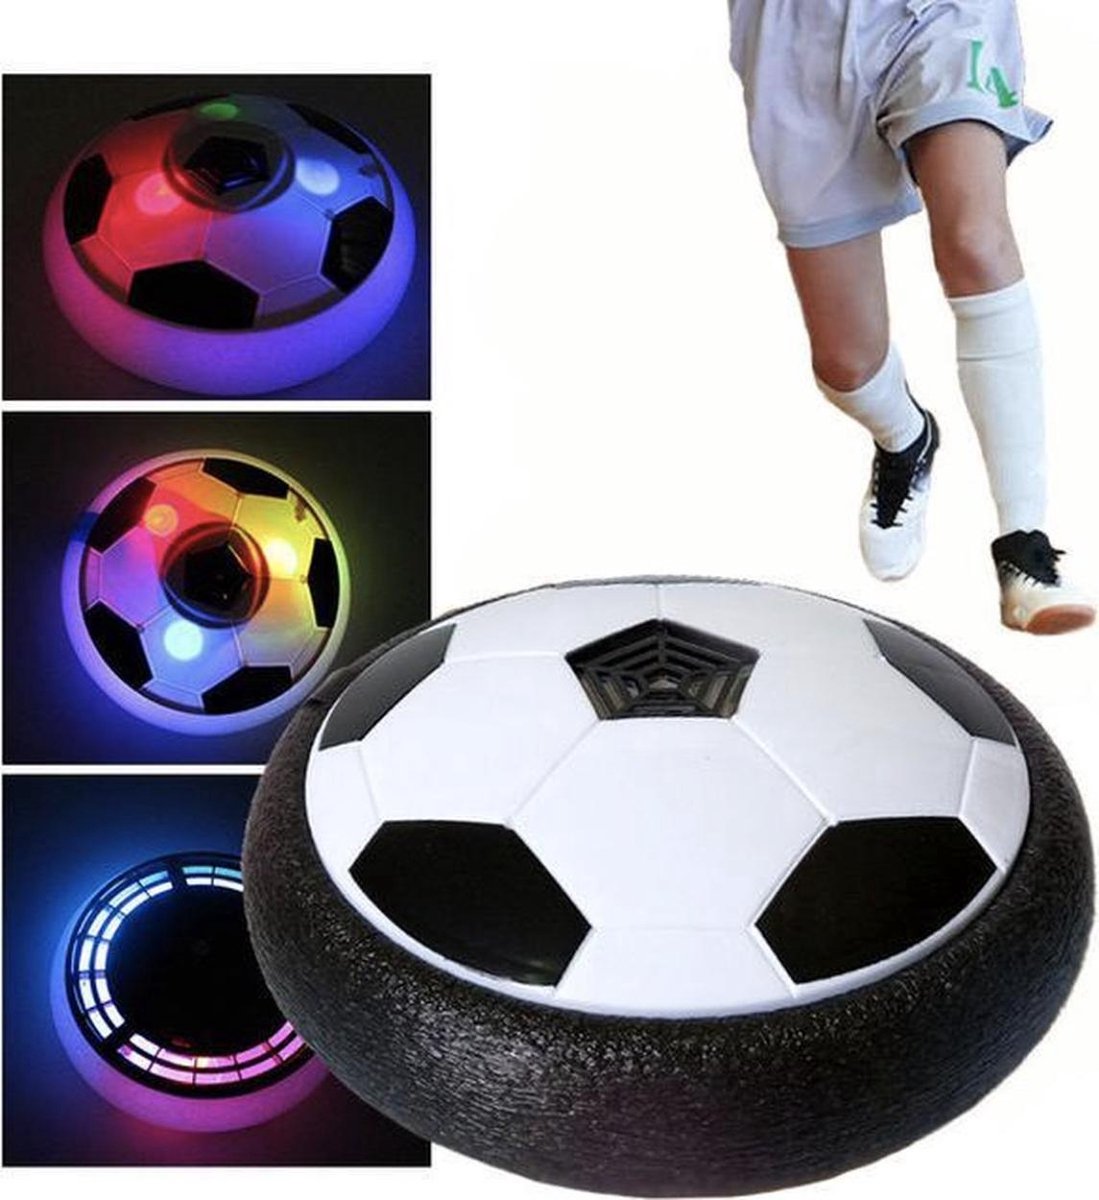 De AirPlay Voetbal met nog 3 foto's van de verschillende kleuren led verlichting en met de benen van een jonge met voetbalschoenen aan op een witte achtergrond